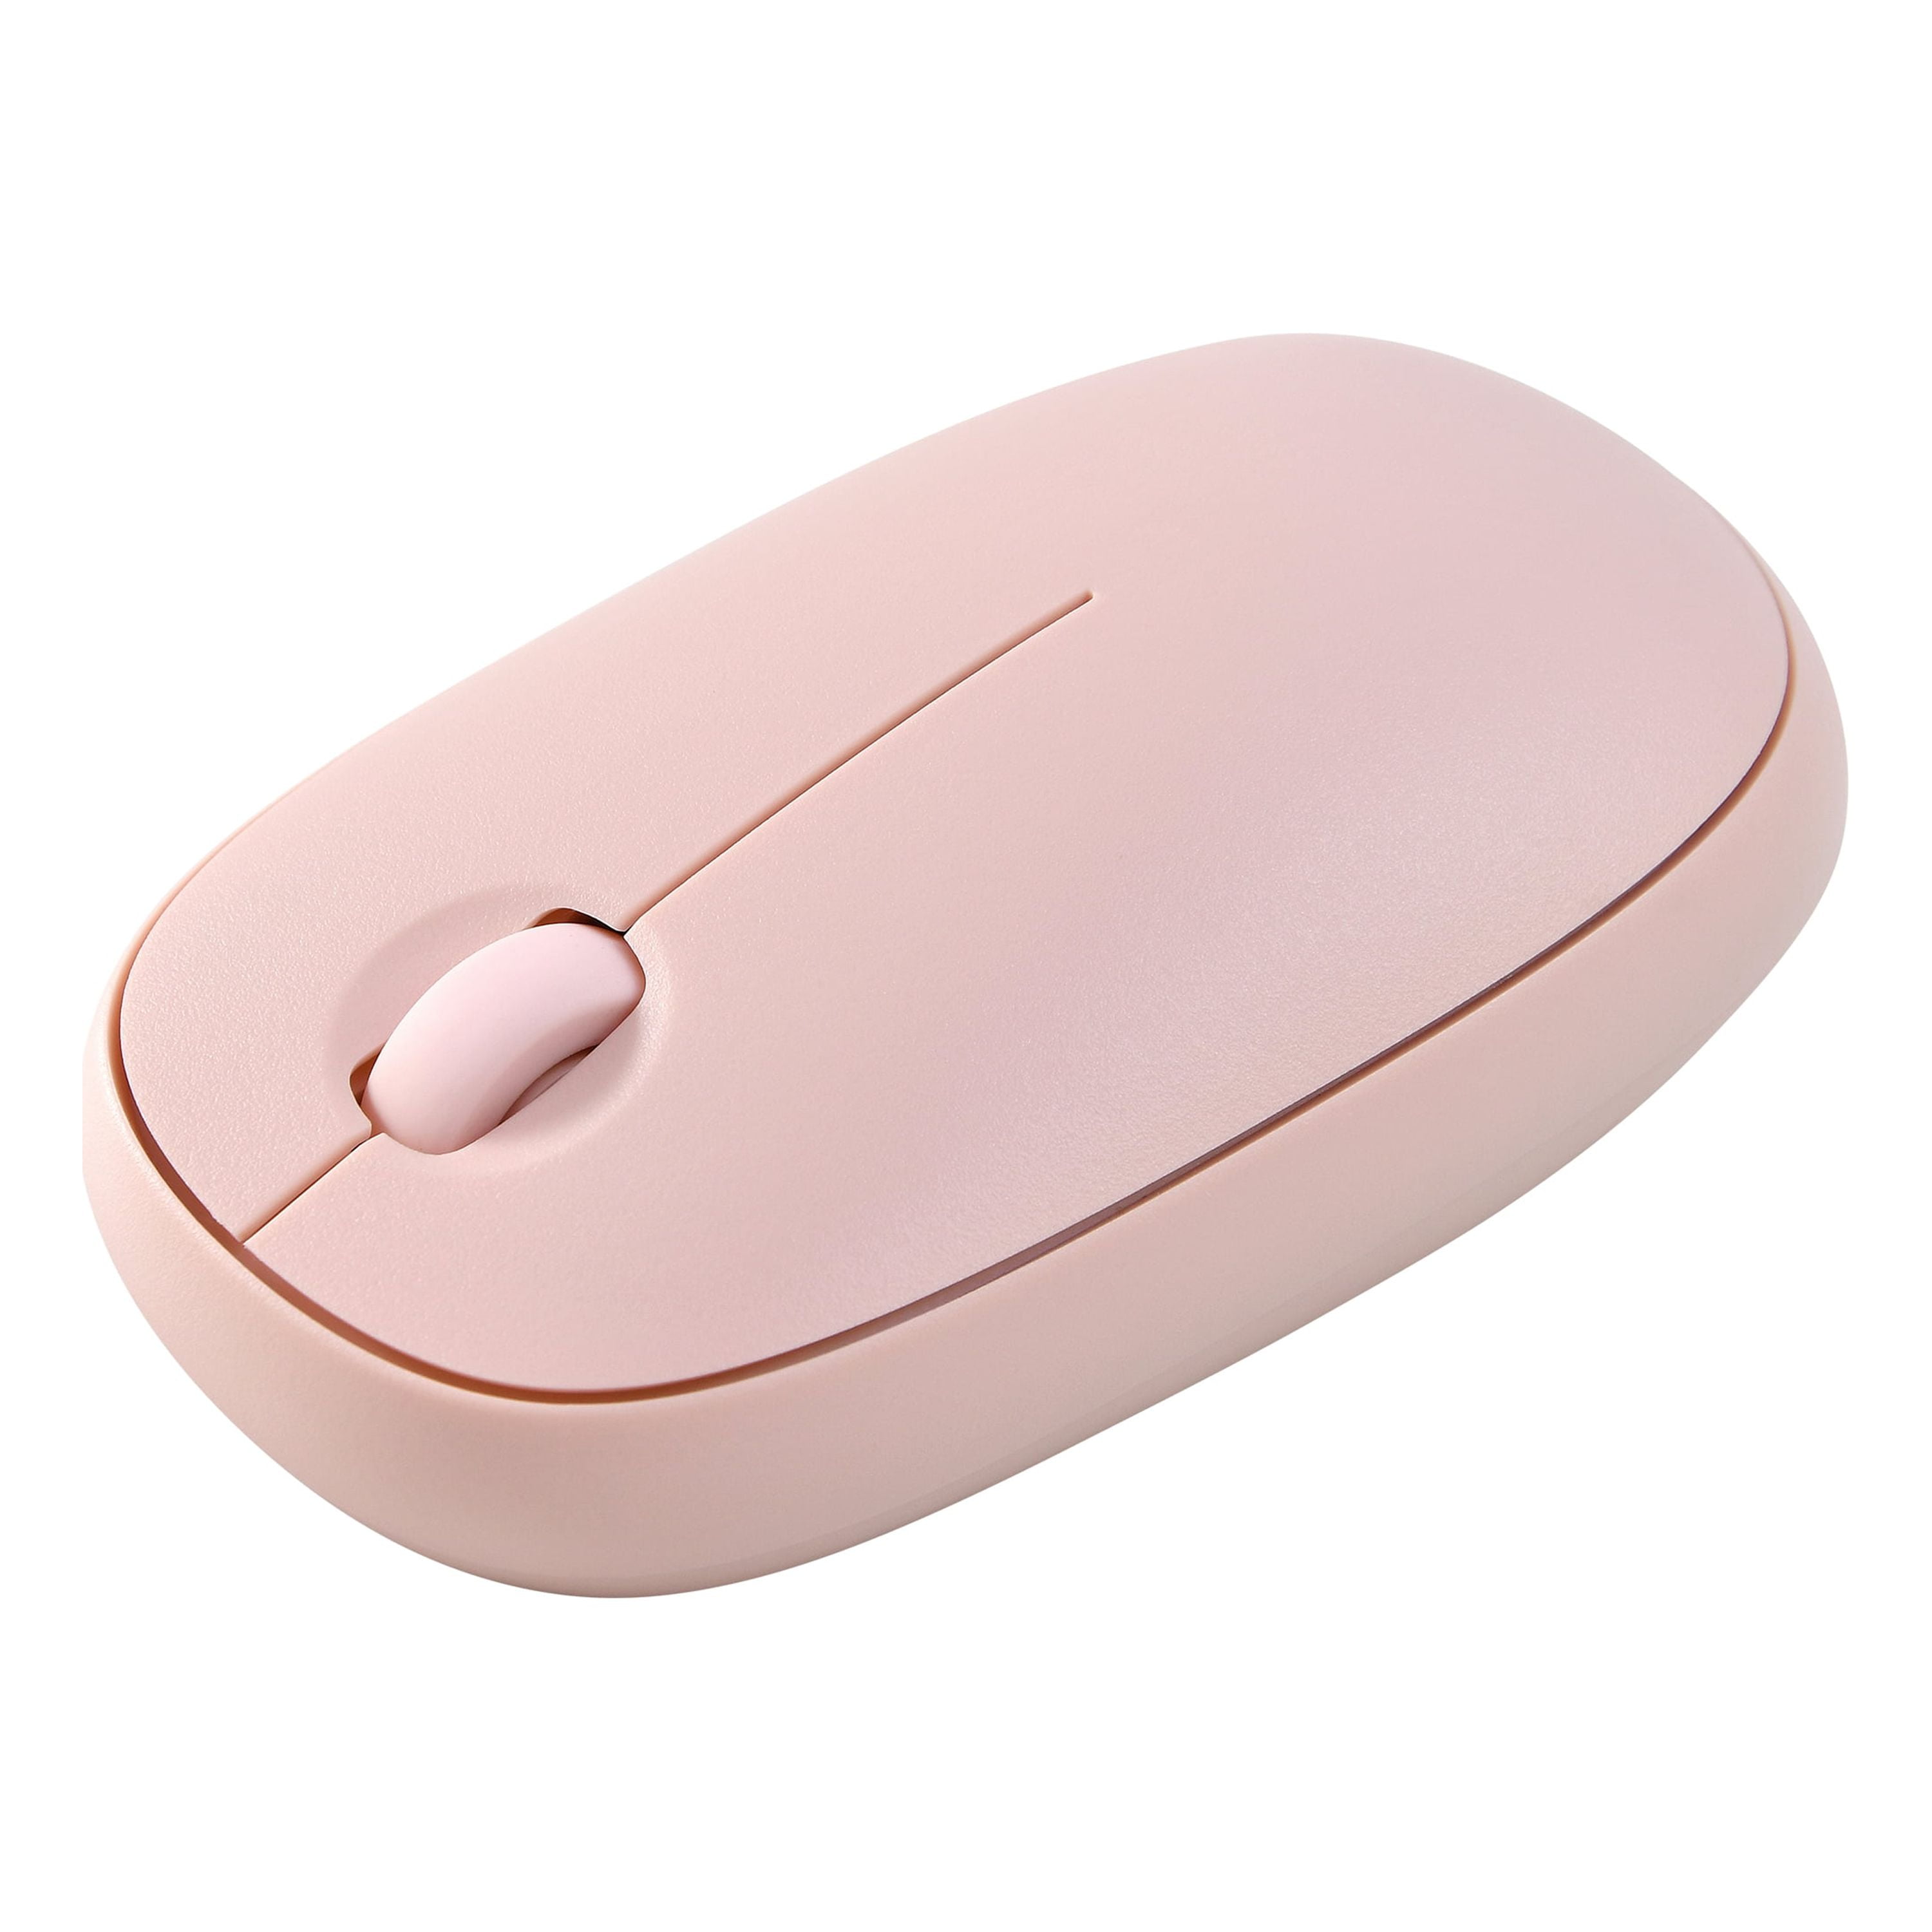 K-03 Mini Portable Wireless Keyboard Mouse 2450MHZ-2476MHZ USB » Gadget mou